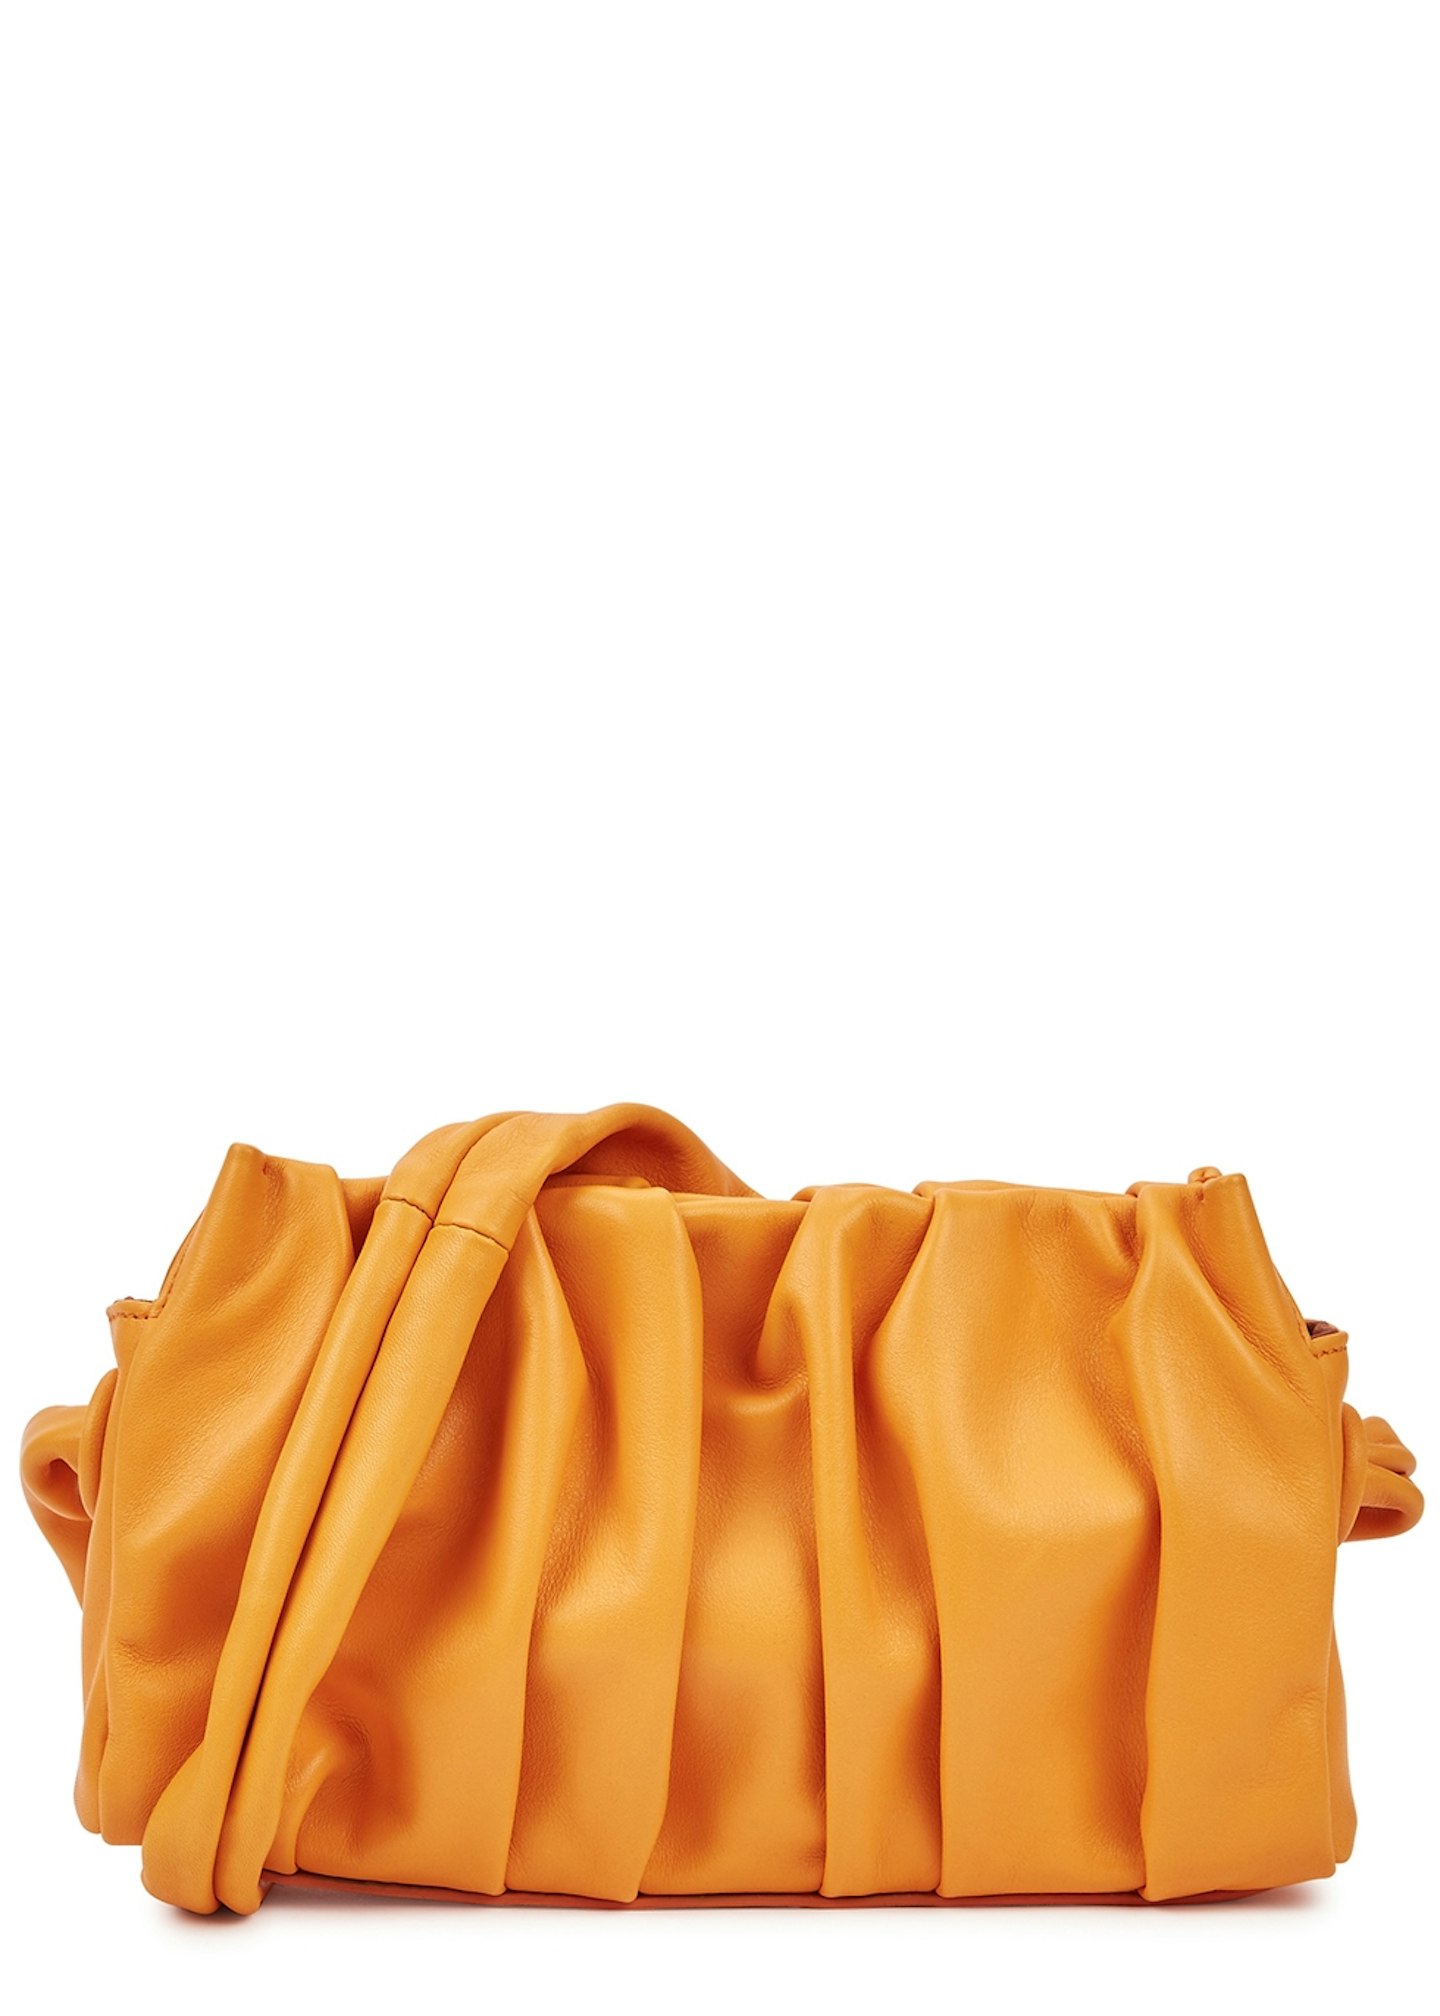 Elleme, Vague Orange Leather Shoulder Bag, £355